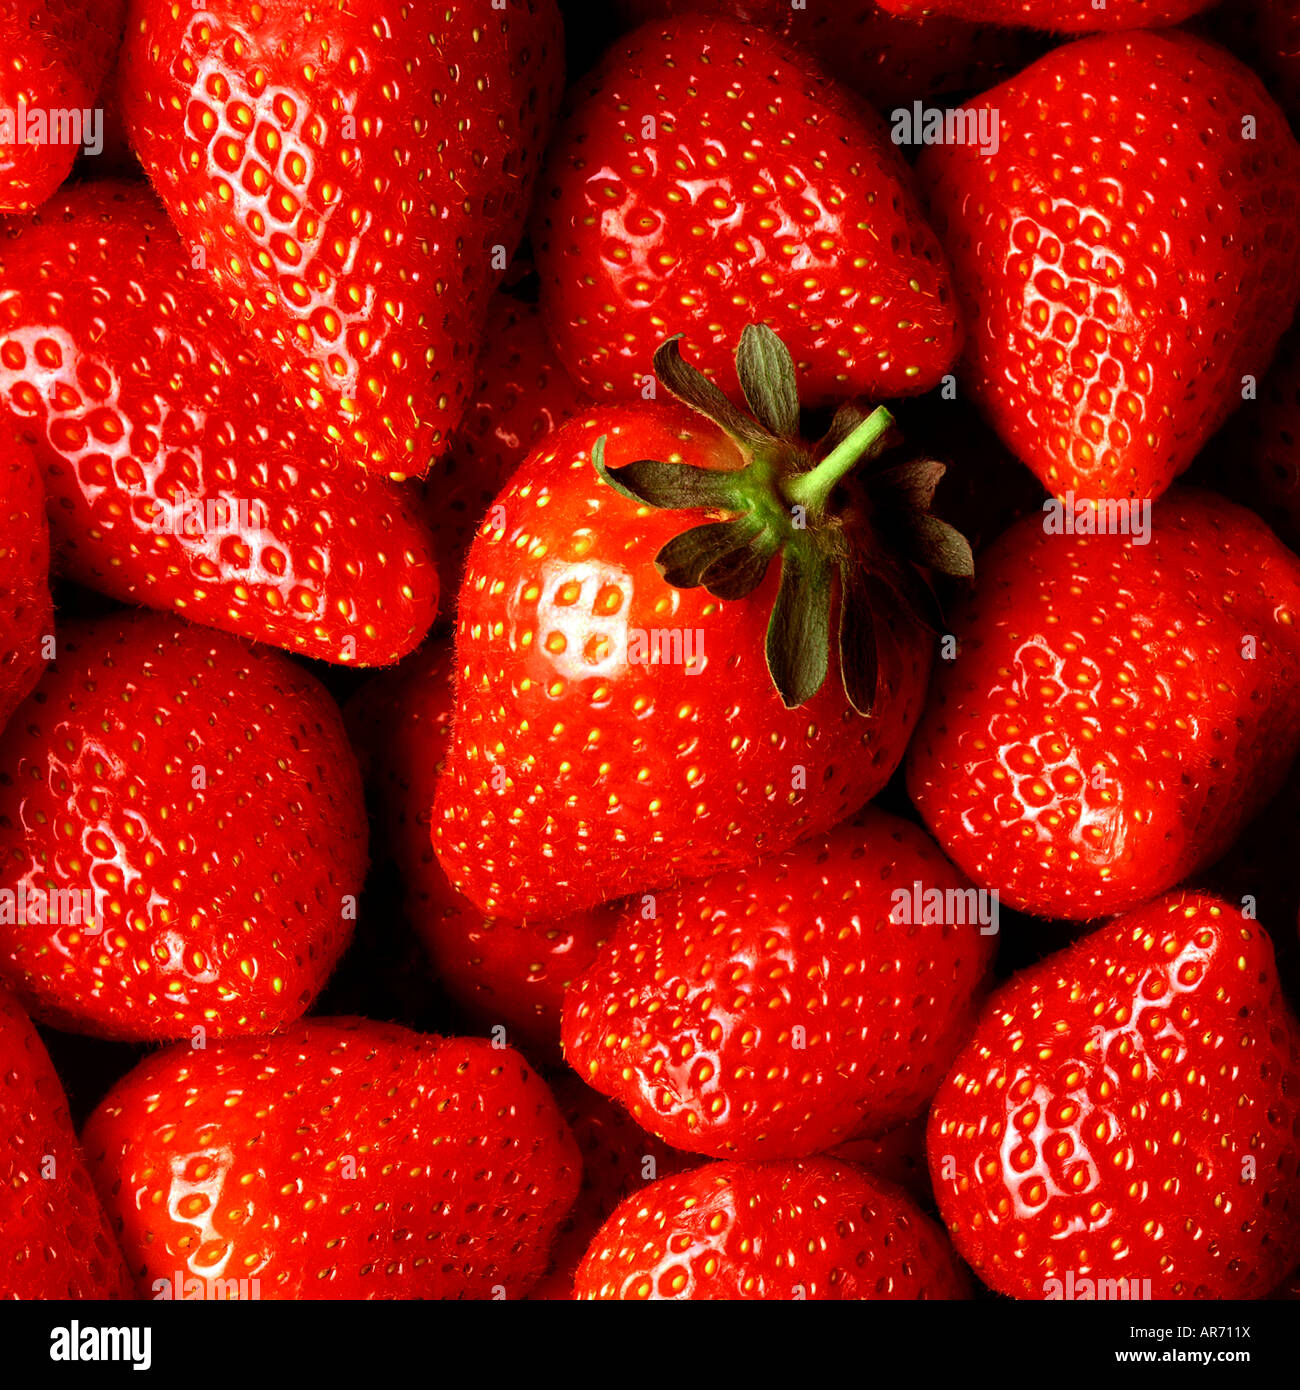 Frische Erdbeeren SCHLIESSEN SICH MIT EINER 'Helden' ERDBEERE IN DER MITTE DER AUFNAHME Stockfoto